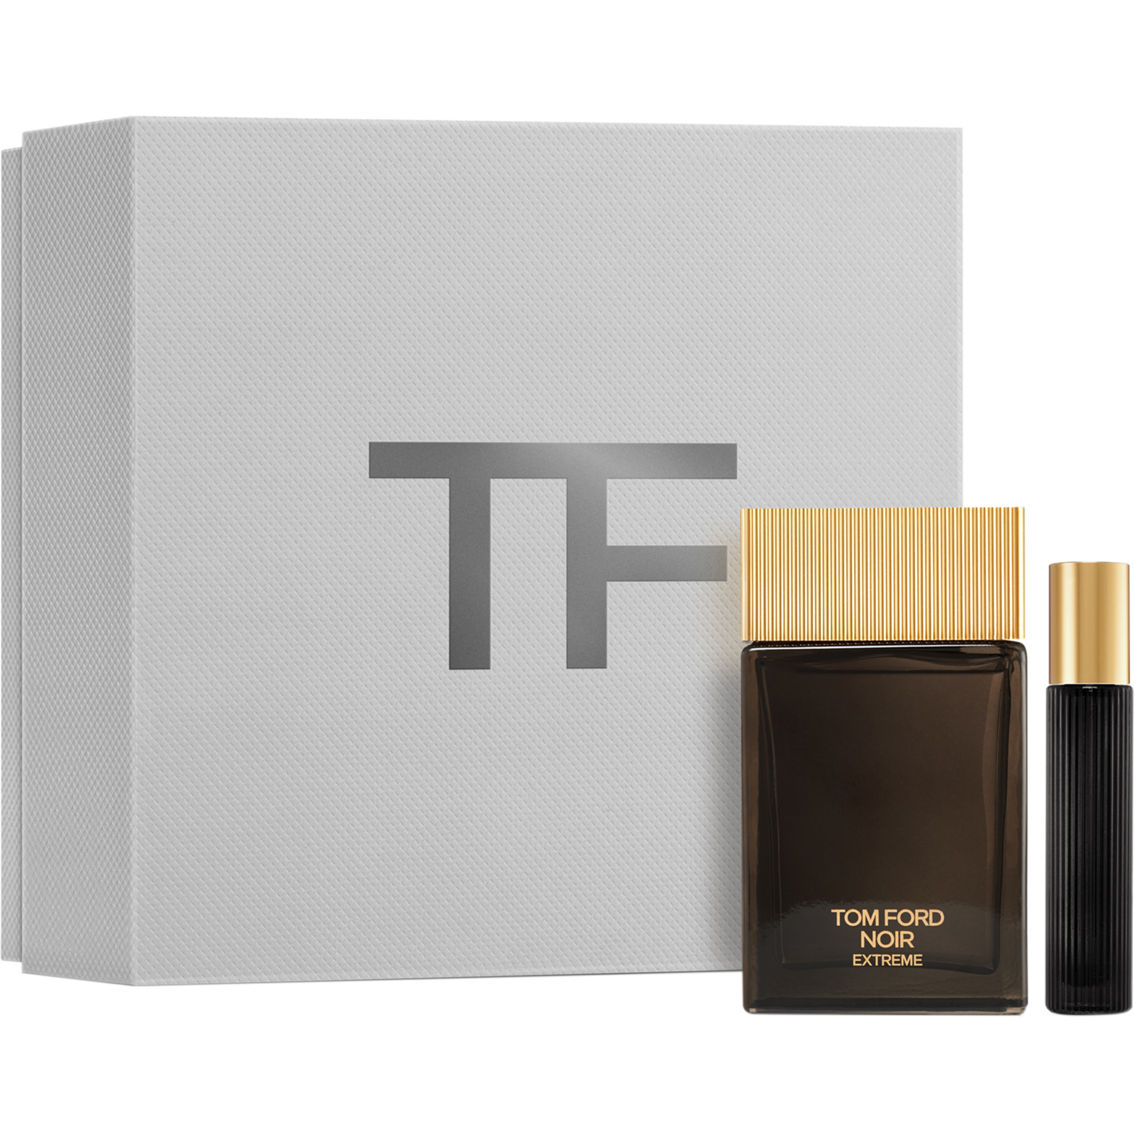 Tom Ford Noir Extreme Eau De Parfum 2 Pc. Set | Gifts Sets For Him ...